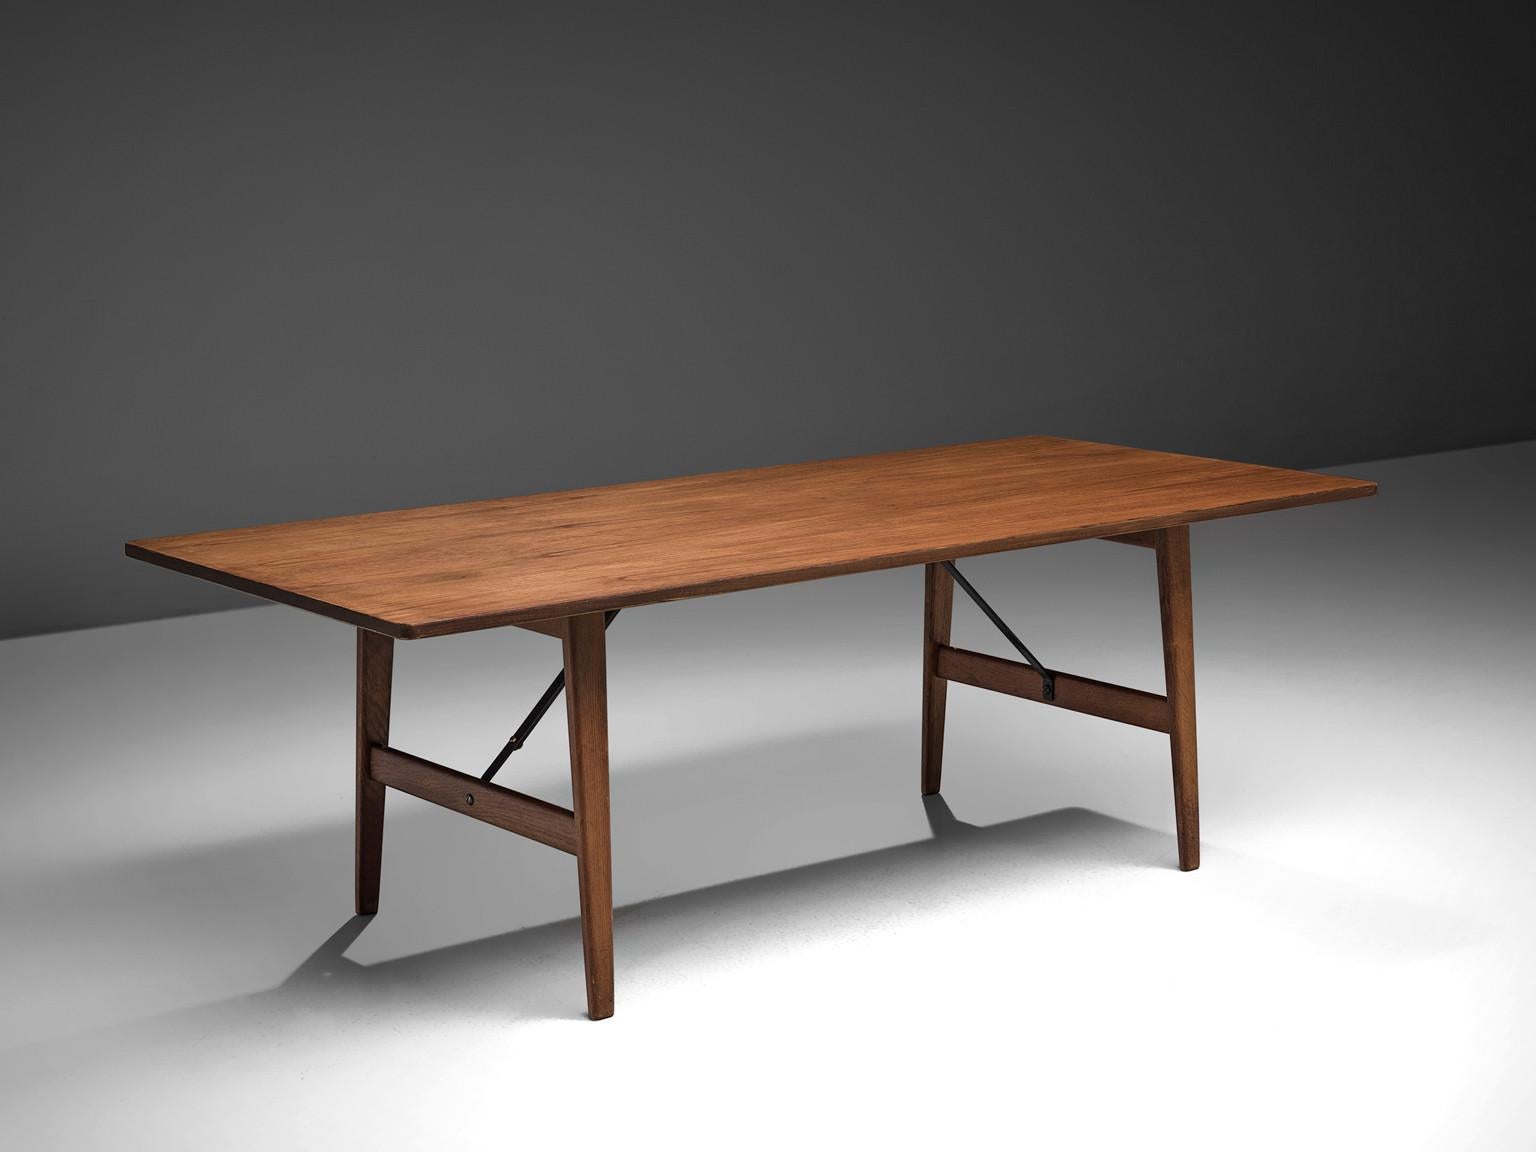 Børge Mogensen für Fredericia, Tisch Modell 281, Teakholz, Metall, Dänemark, Entwurf 1956

Dieser bescheidene, schlichte Esstisch zeichnet sich durch eine starke und solide Konstruktion aus Teakholz aus. Dies wird durch die scharfen und klaren